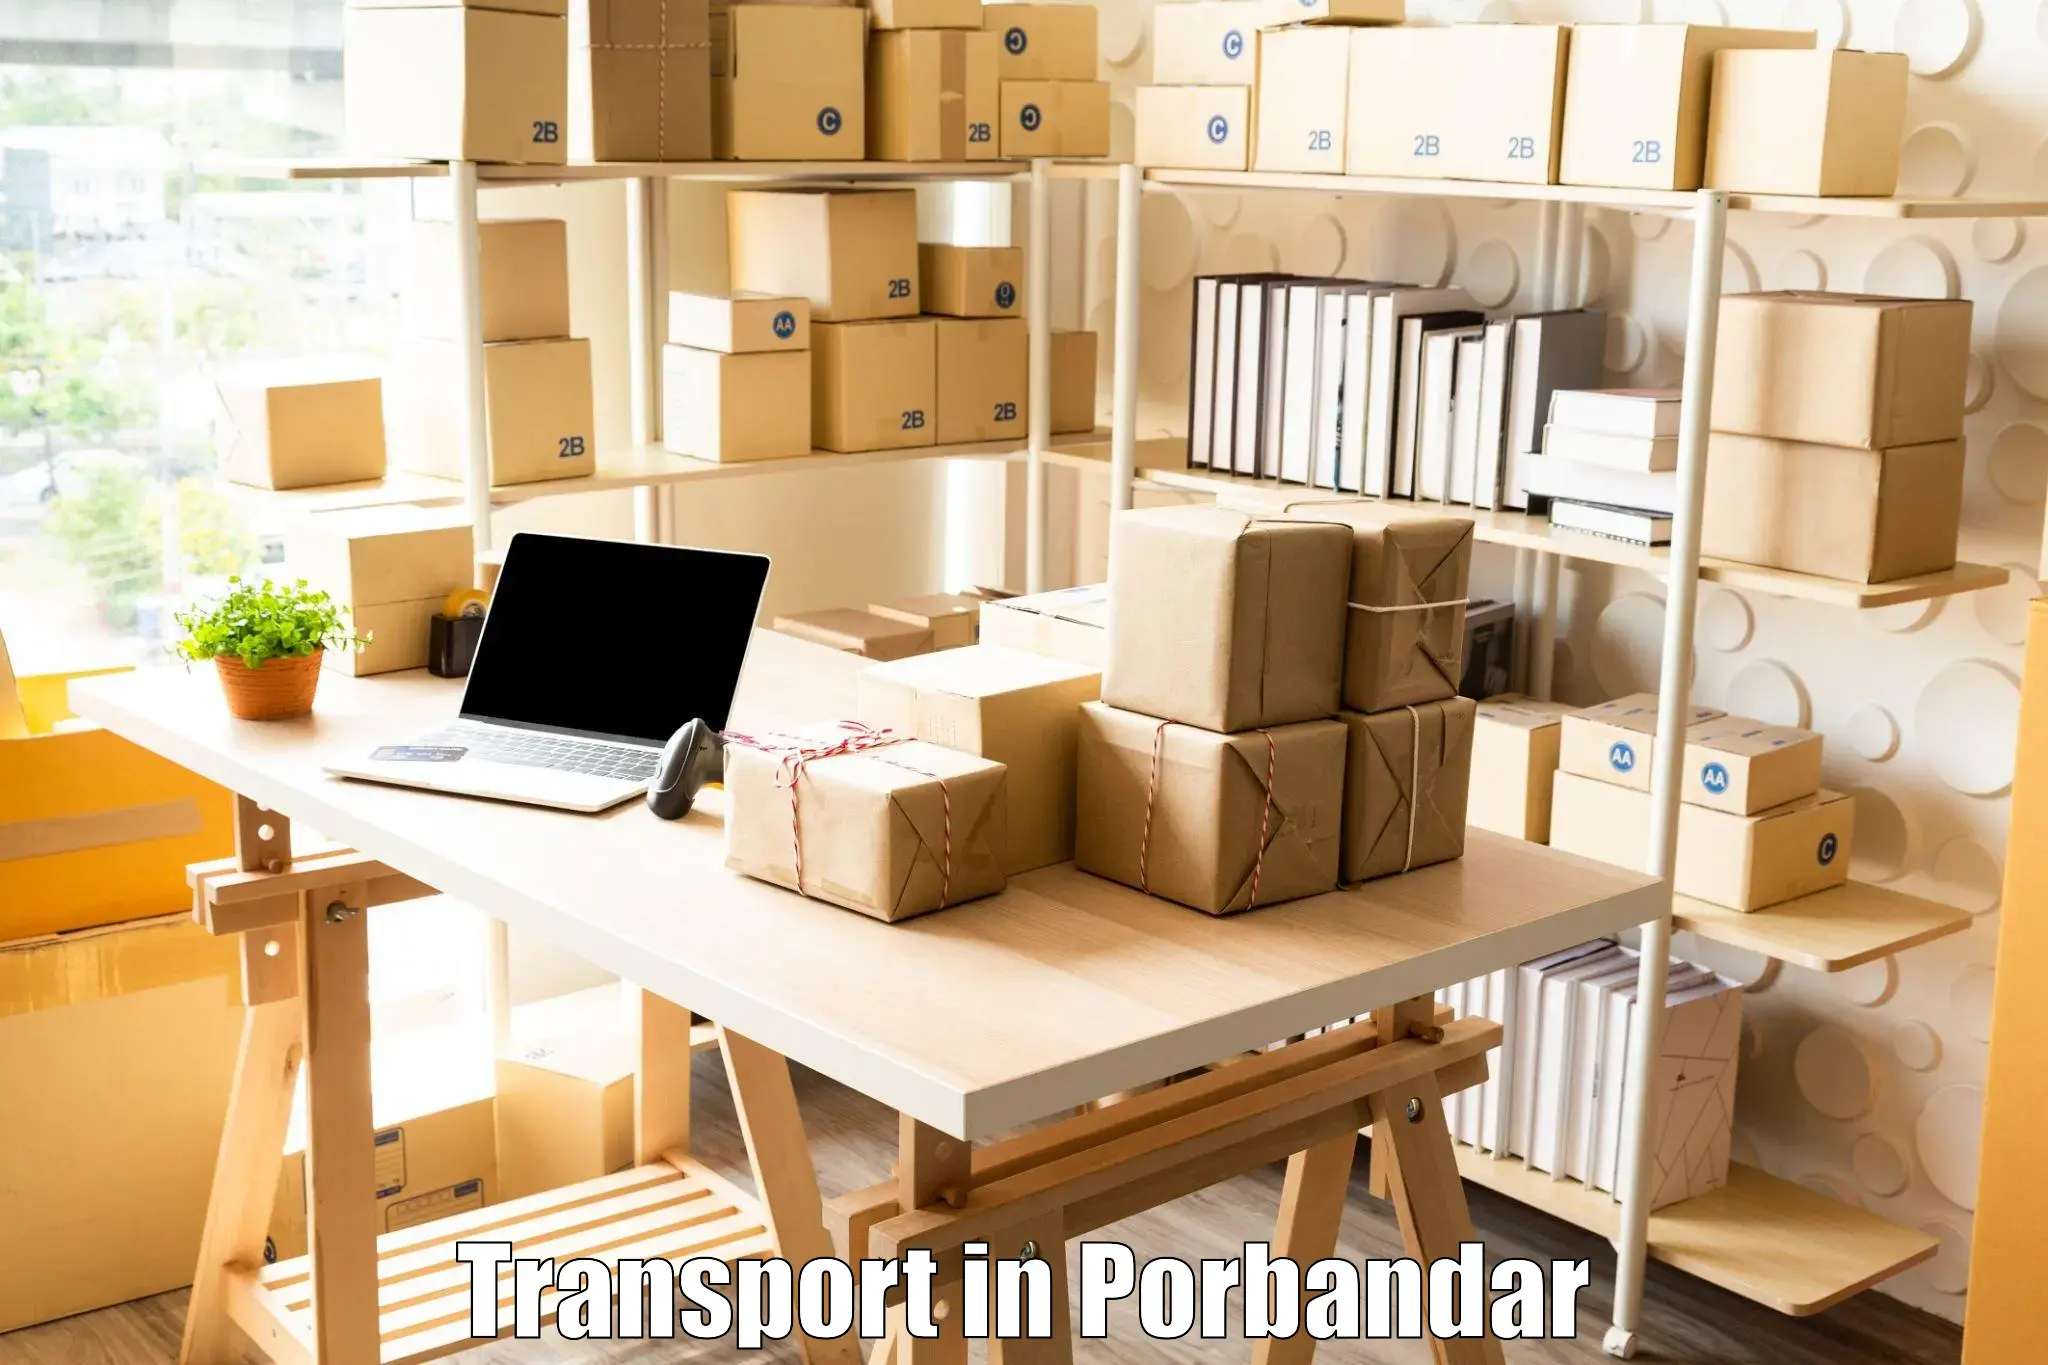 Nearest transport service in Porbandar